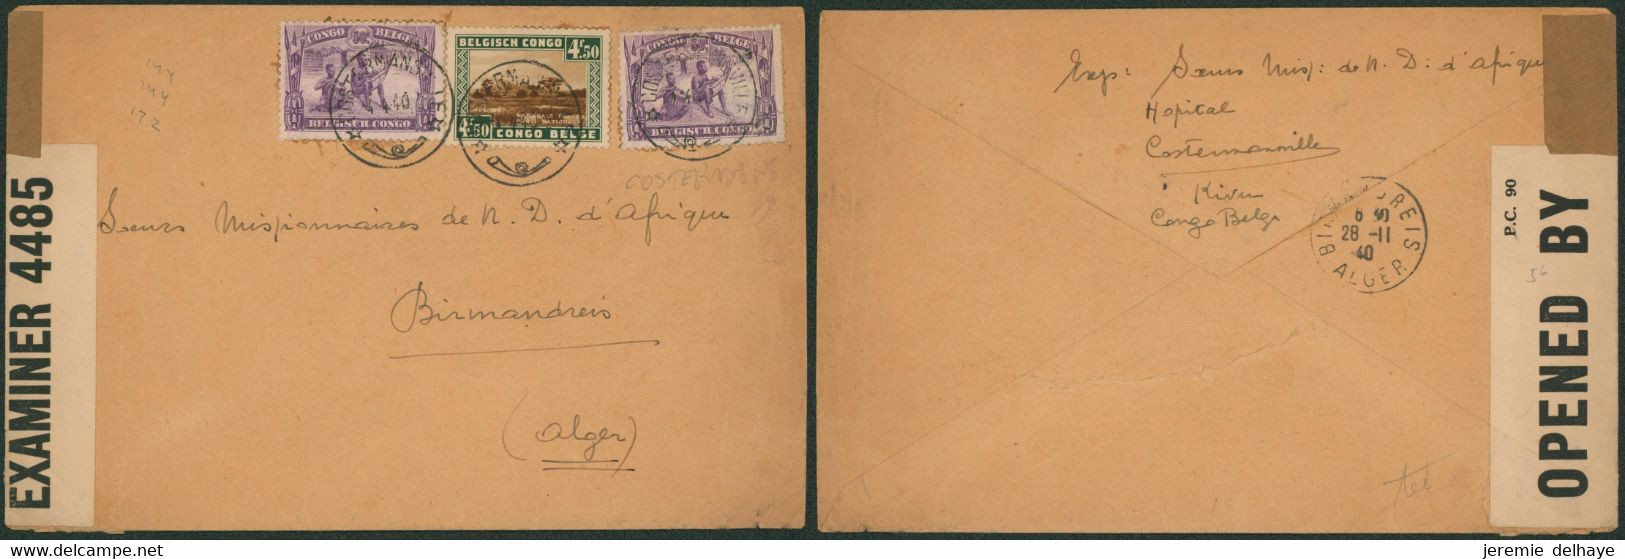 Affranhc. Mixte Sur L. Expédié De Costermansville (Hopital) > Birmandreis (Algérie) + Bandelette De Censure Anglaise. - Lettres & Documents